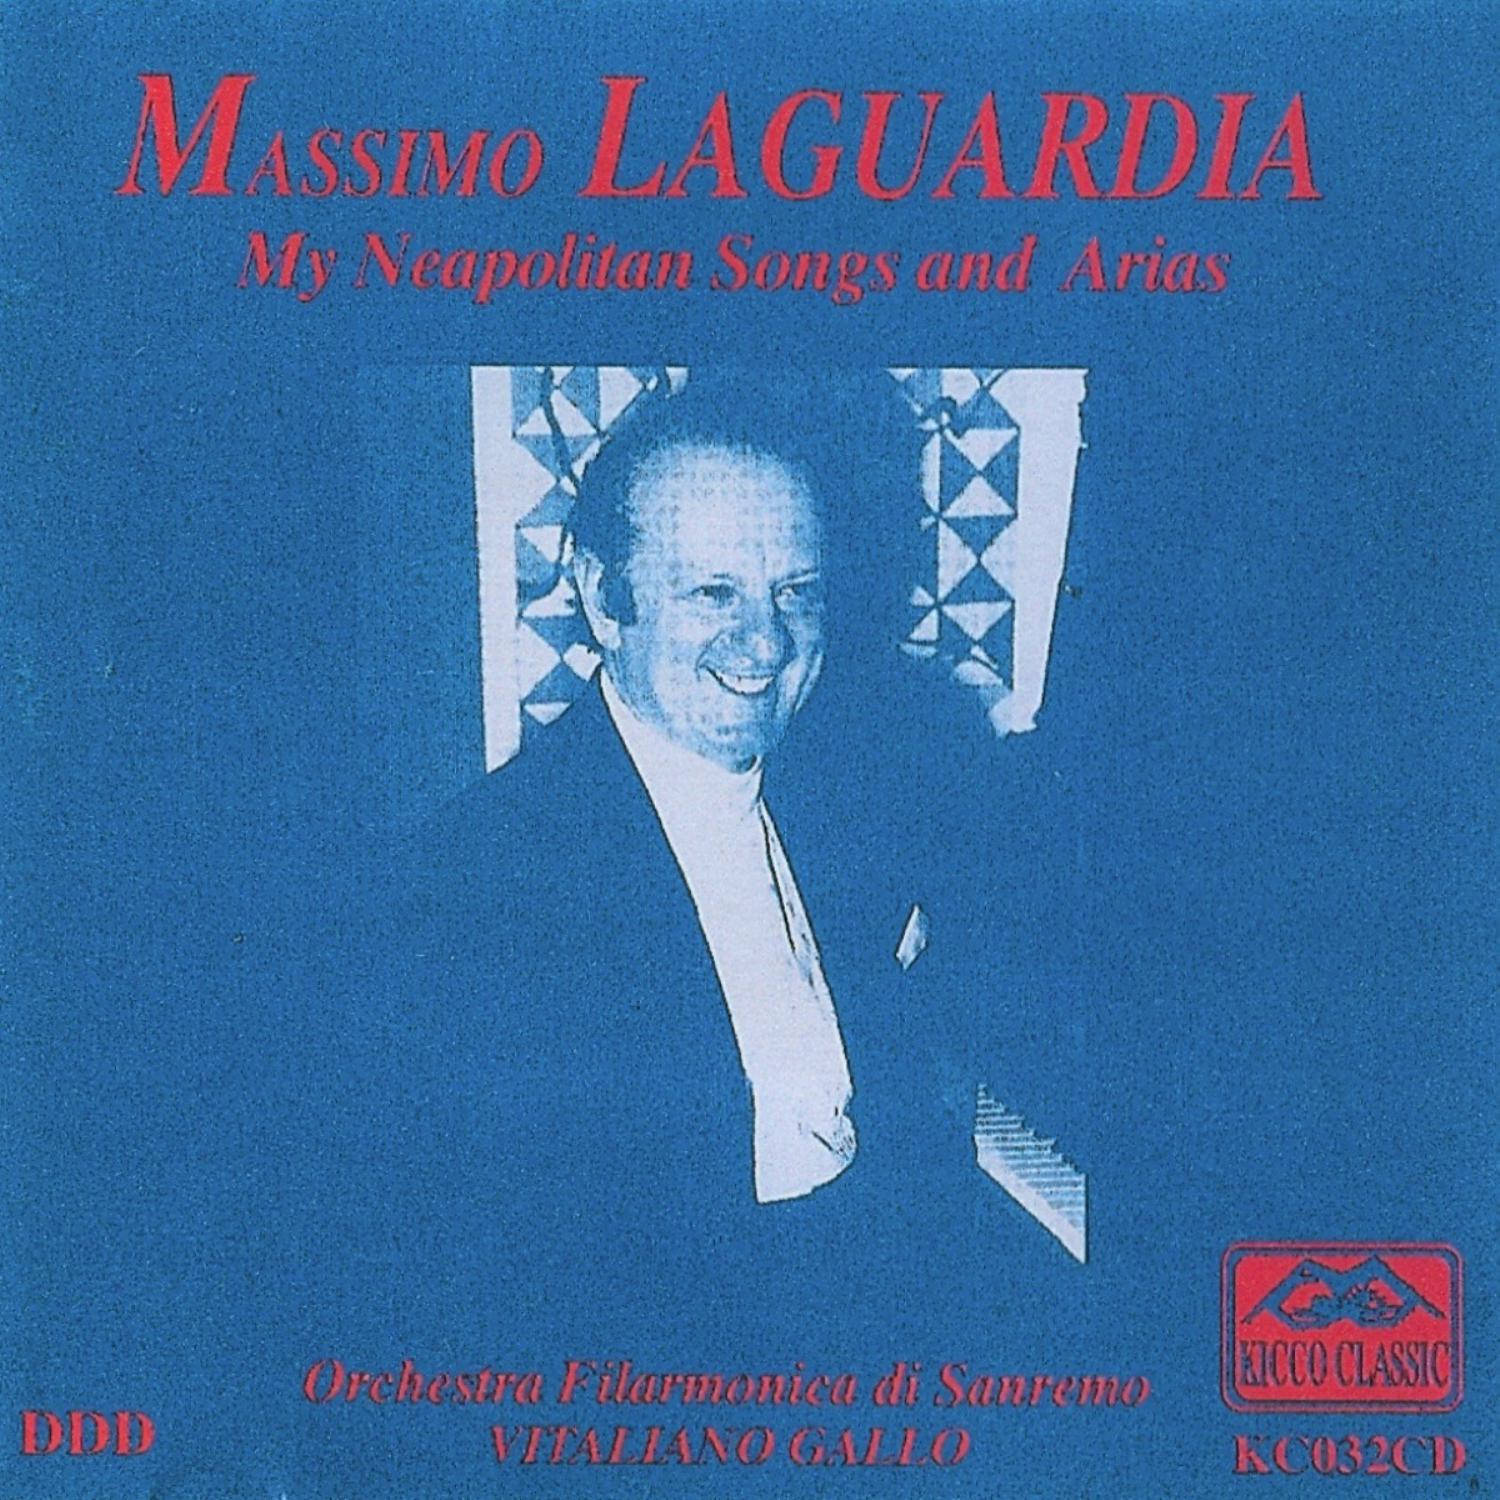 Massimo La Guardia - Ave Maria